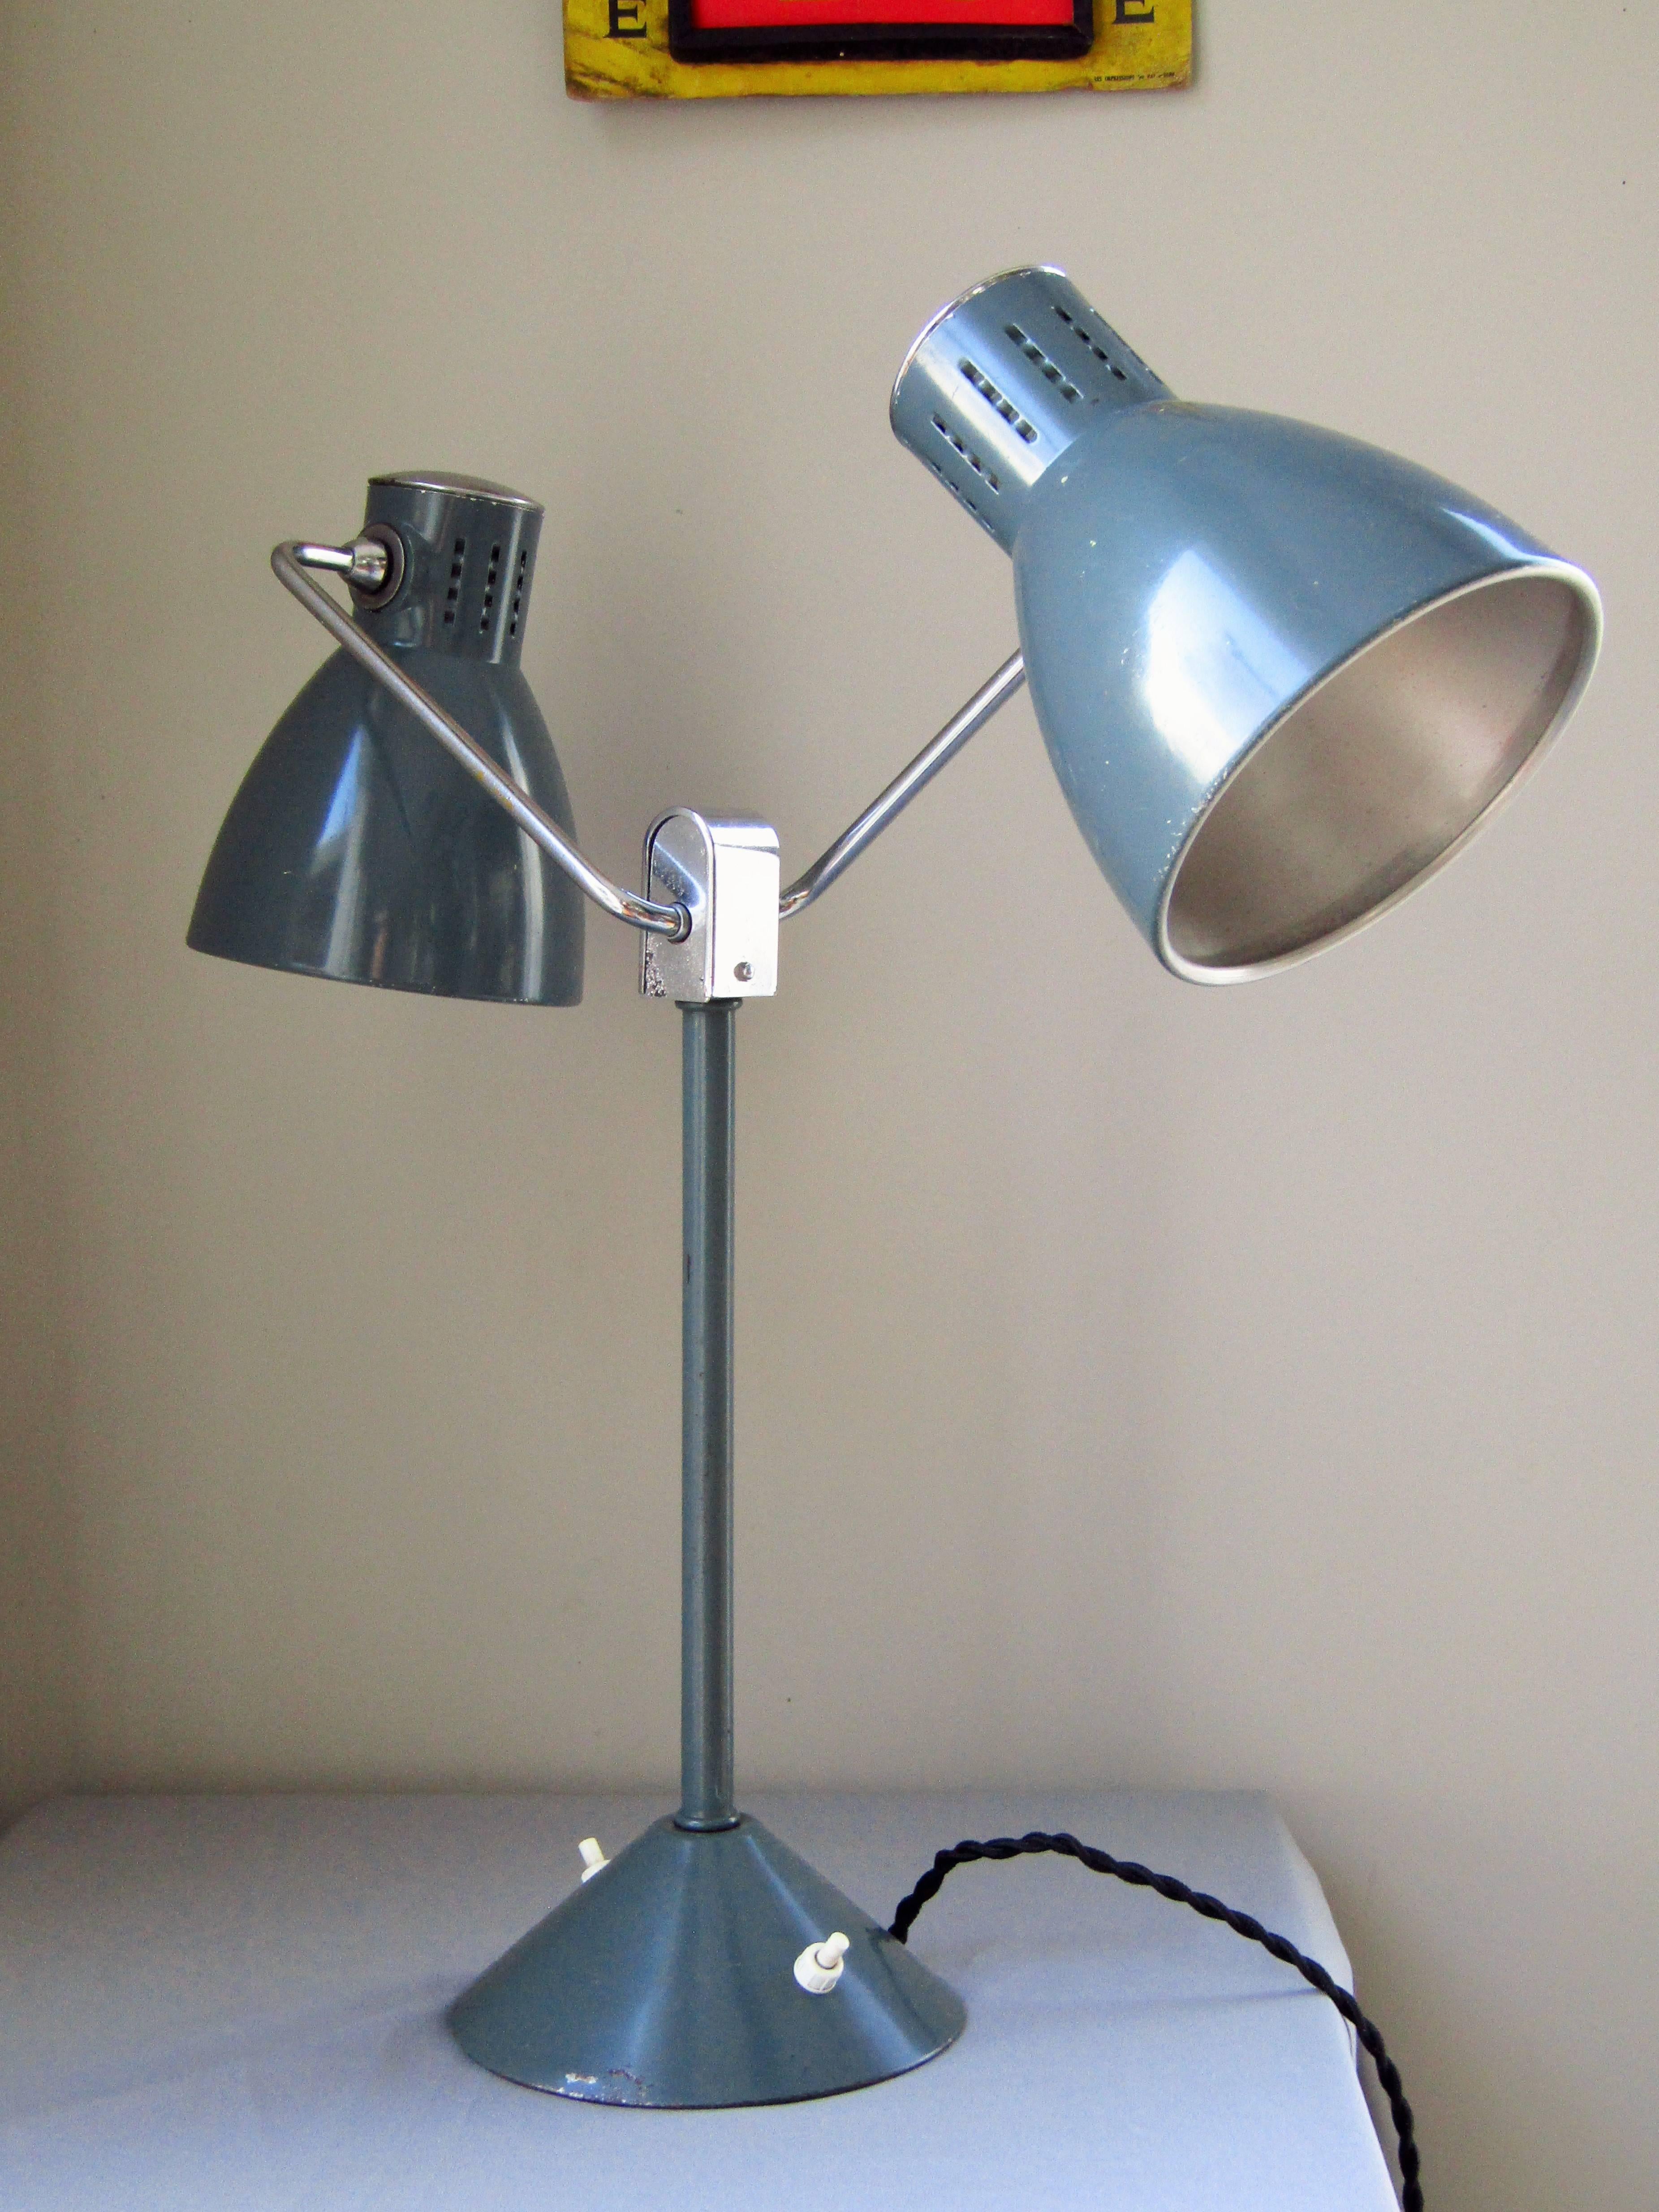 Lampe de bureau double Art déco par Jumo, France, années 1940. État d'origine, seulement recâblé. Patine légèrement usée.

